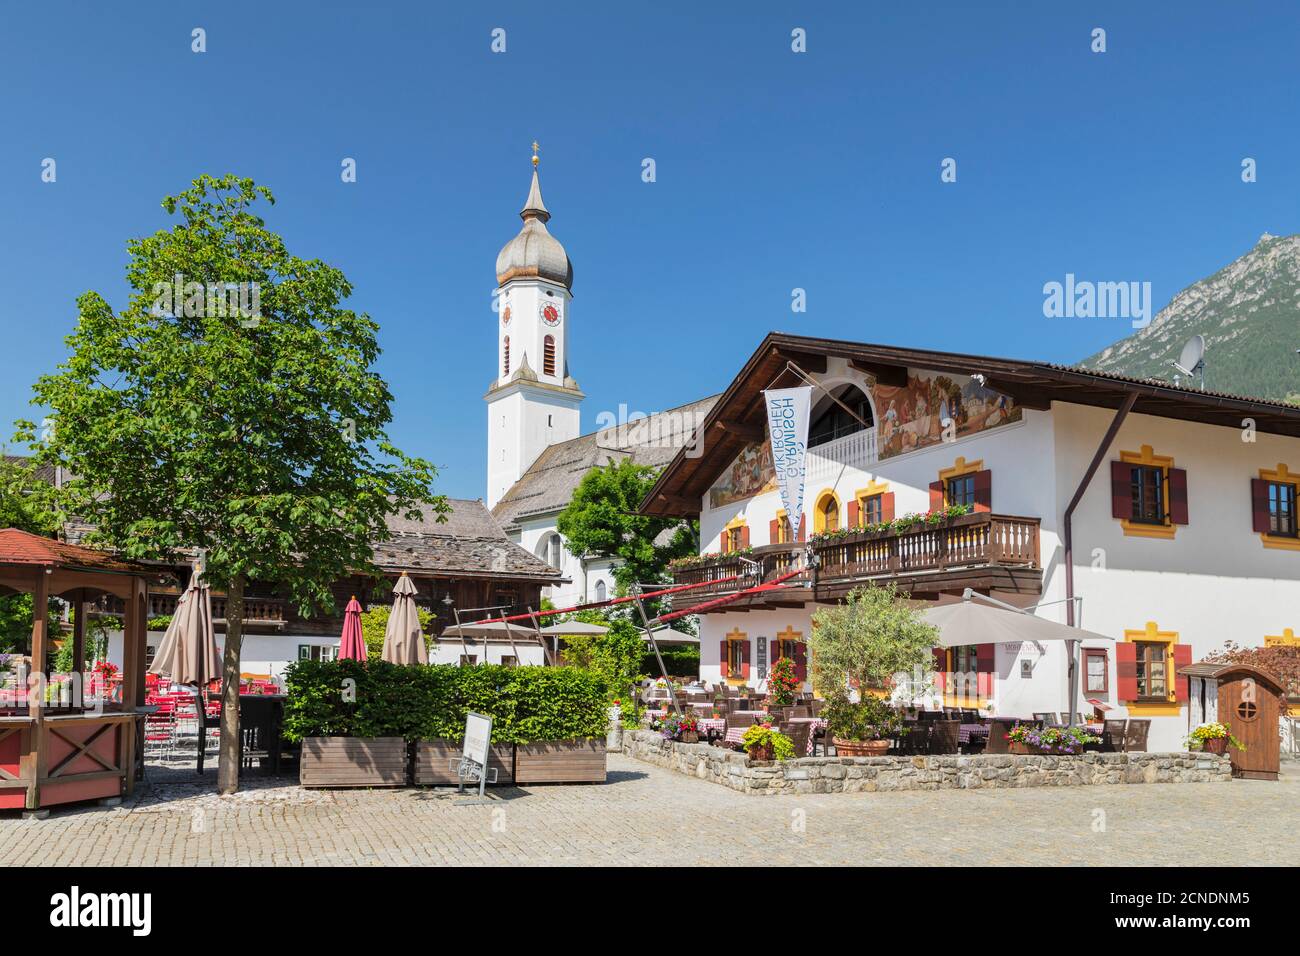 Cafe, Mohrenplatz, with St. Martin Church, Garmisch-Partenkirchen, Upper Bavaria, Bavaria, Germany, Europe Stock Photo